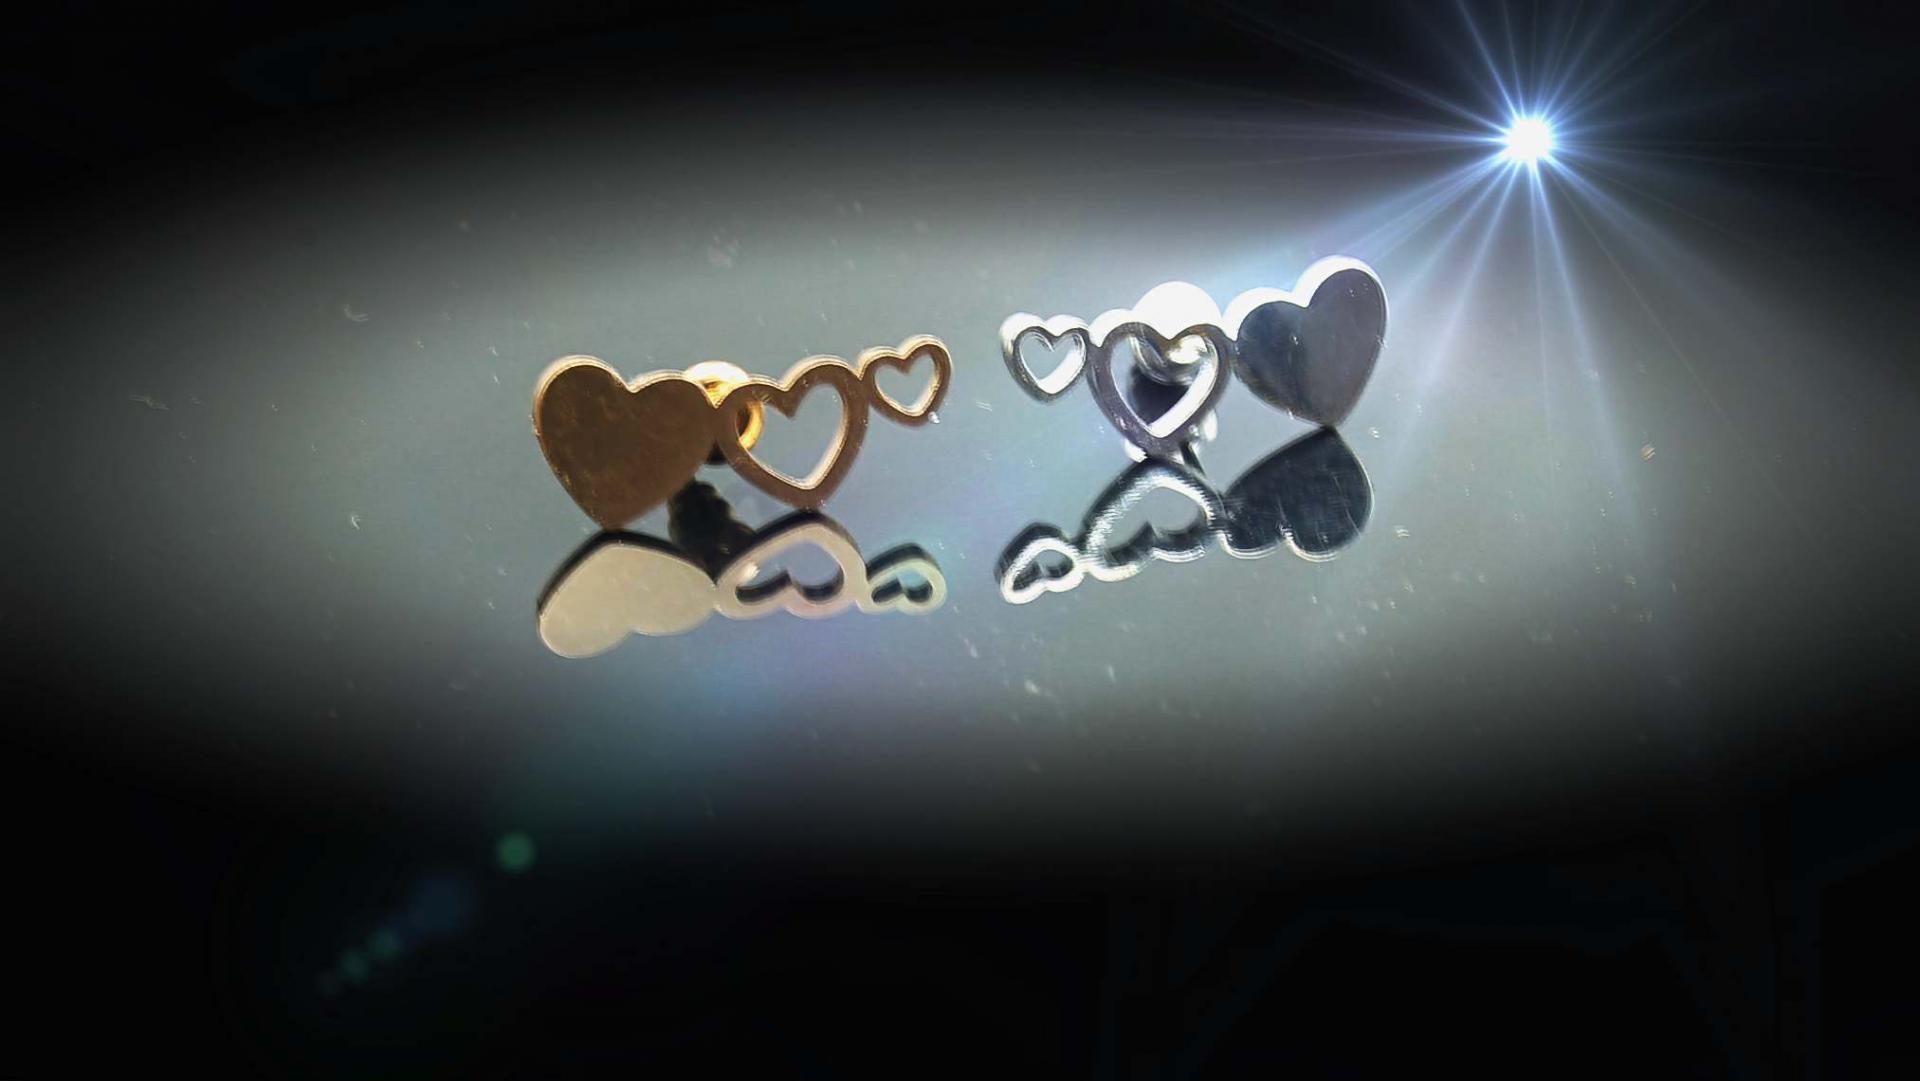 Chrissie C jewellery heart earrings